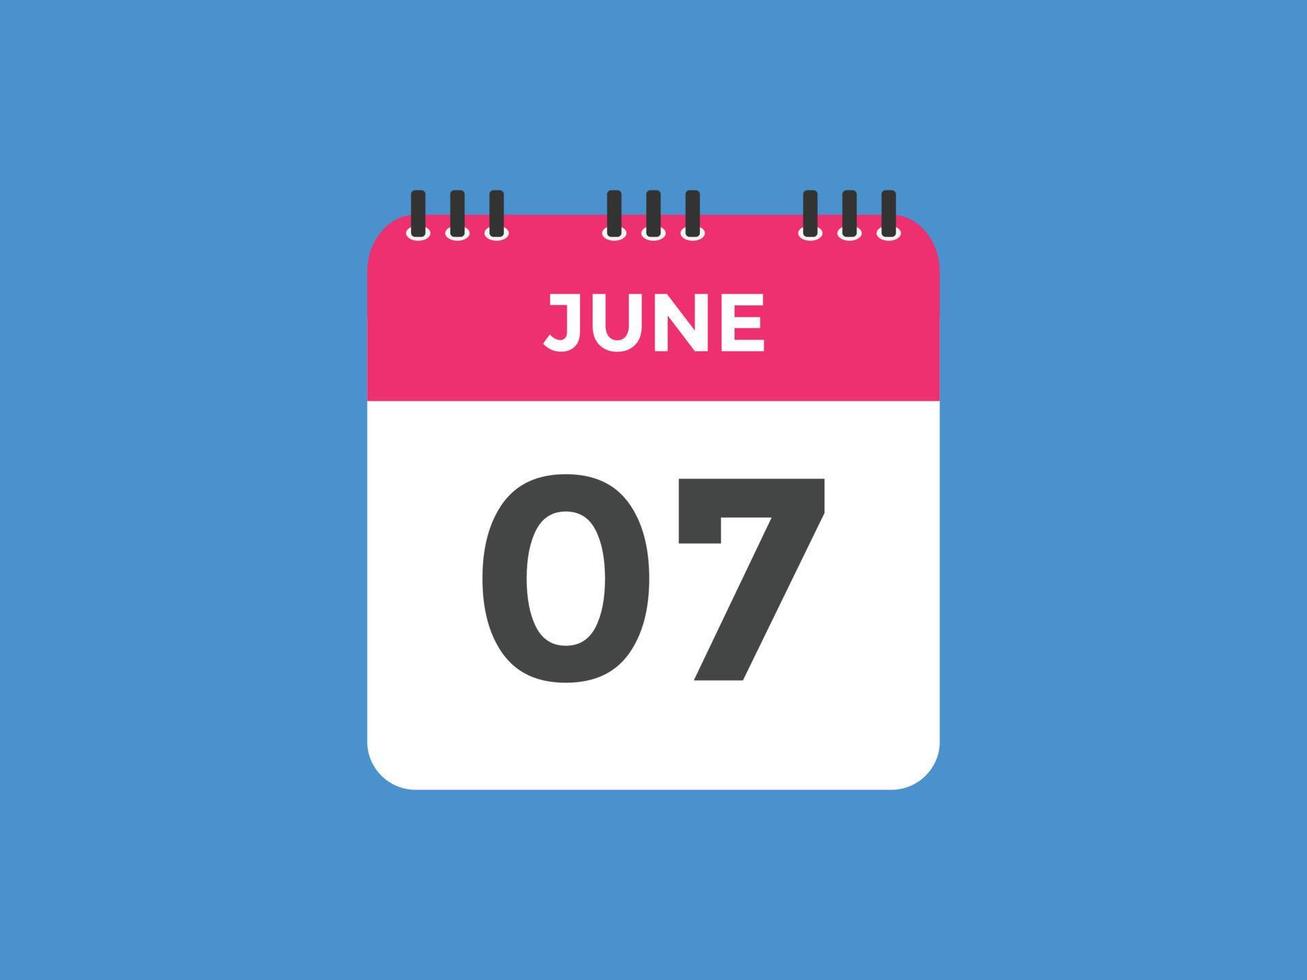 rappel du calendrier du 7 juin. Modèle d'icône de calendrier quotidien du 7 juin. modèle de conception d'icône calendrier 7 juin. illustration vectorielle vecteur